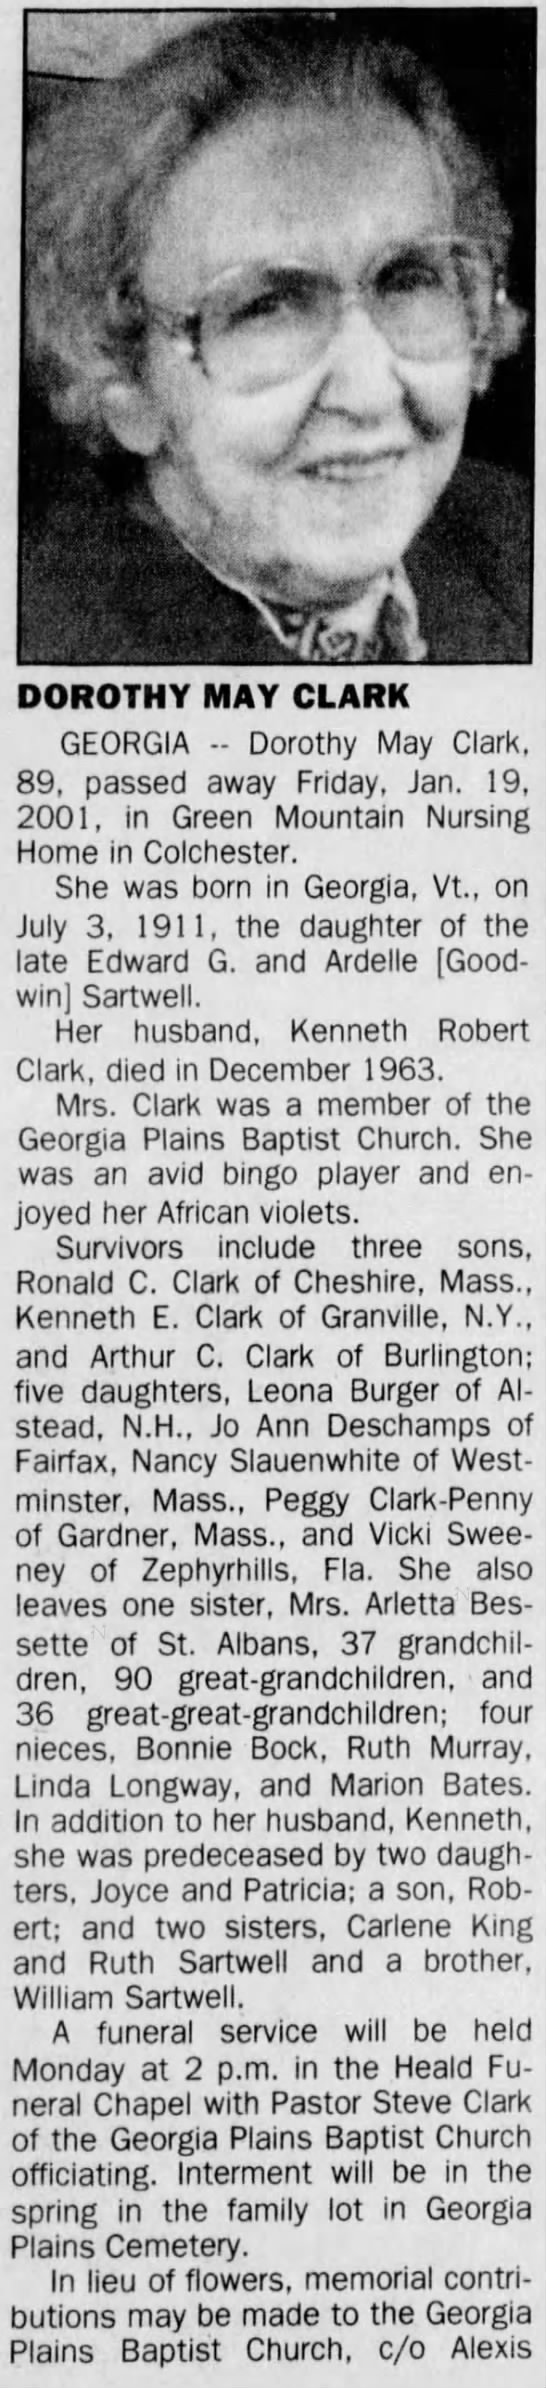 Dorothy May Clark Obituary January 2001